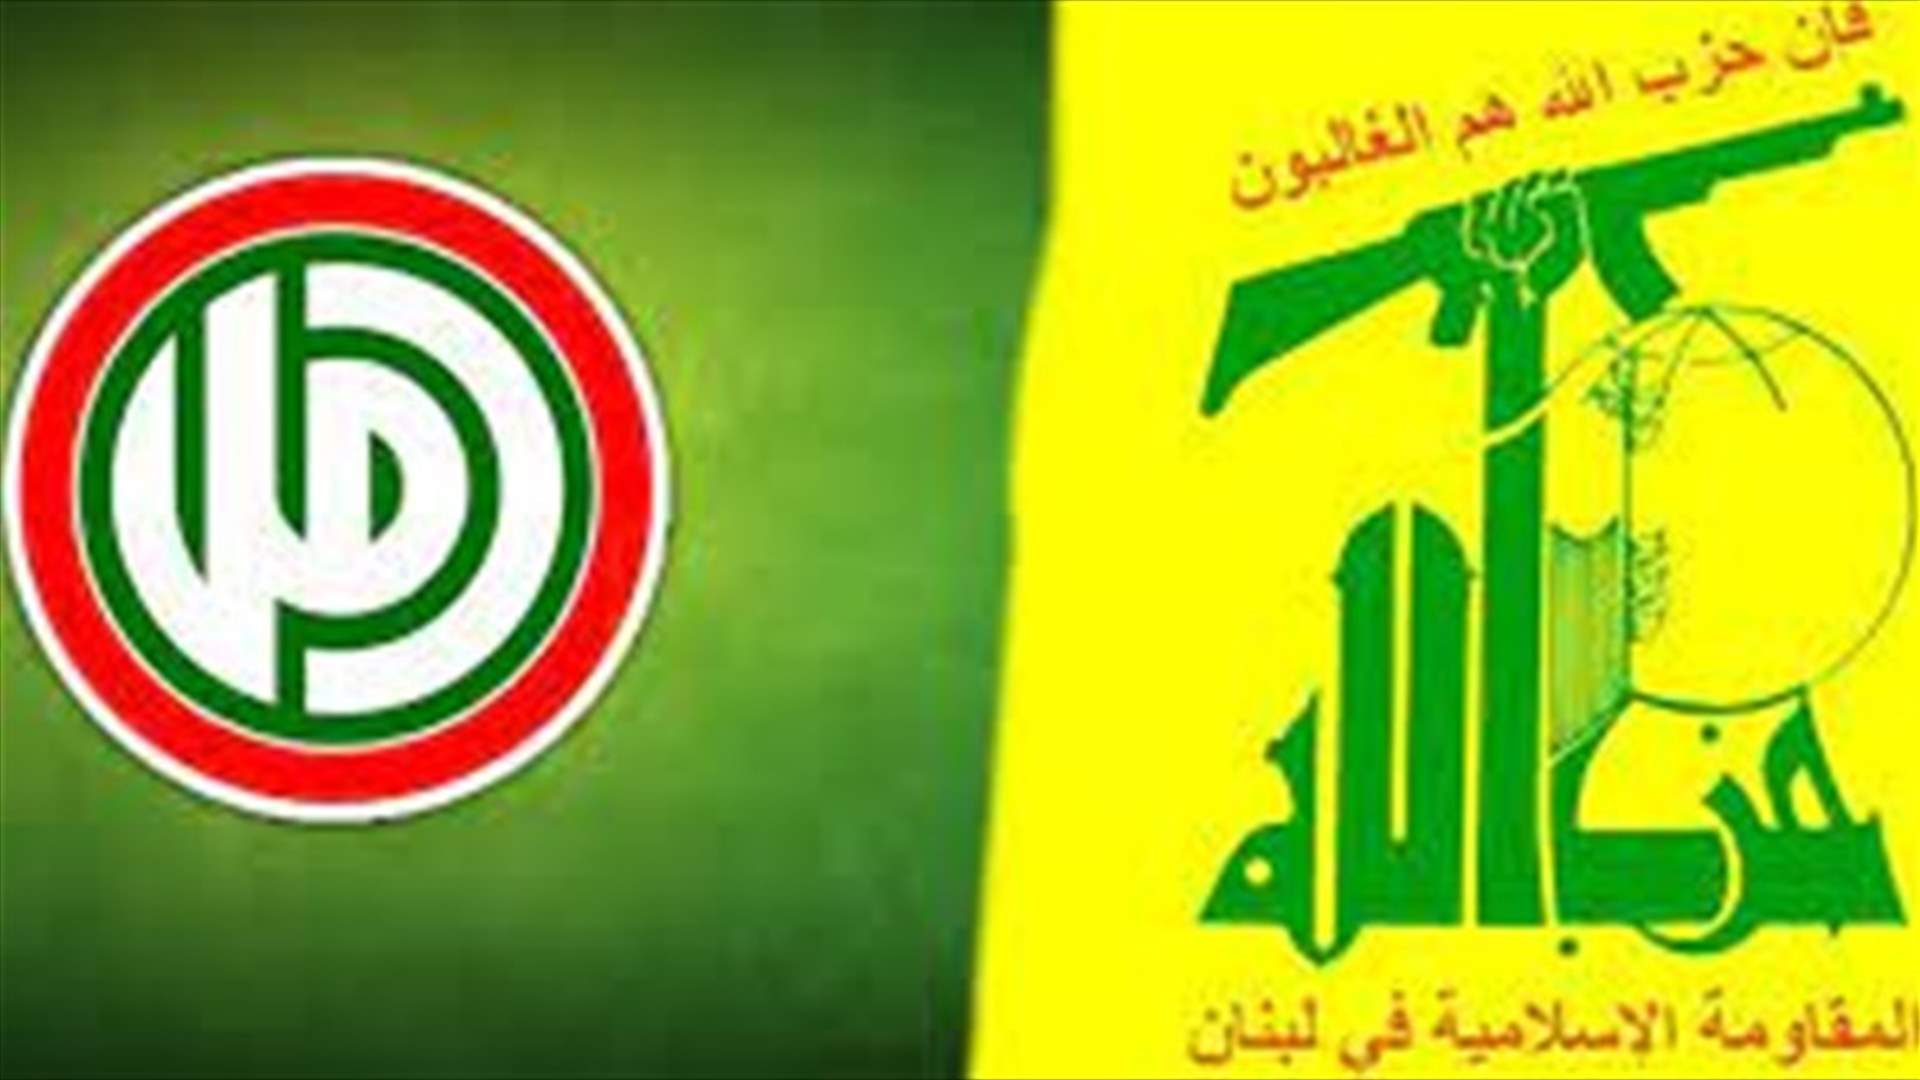 اجتماع بين مسؤولي التواصل الاجتماعي في حزب الله وأمل: لأعلى درجات الانضباط ونبذ التفرقة والتعاون لما فيه مصلحة الثنائي الوطني